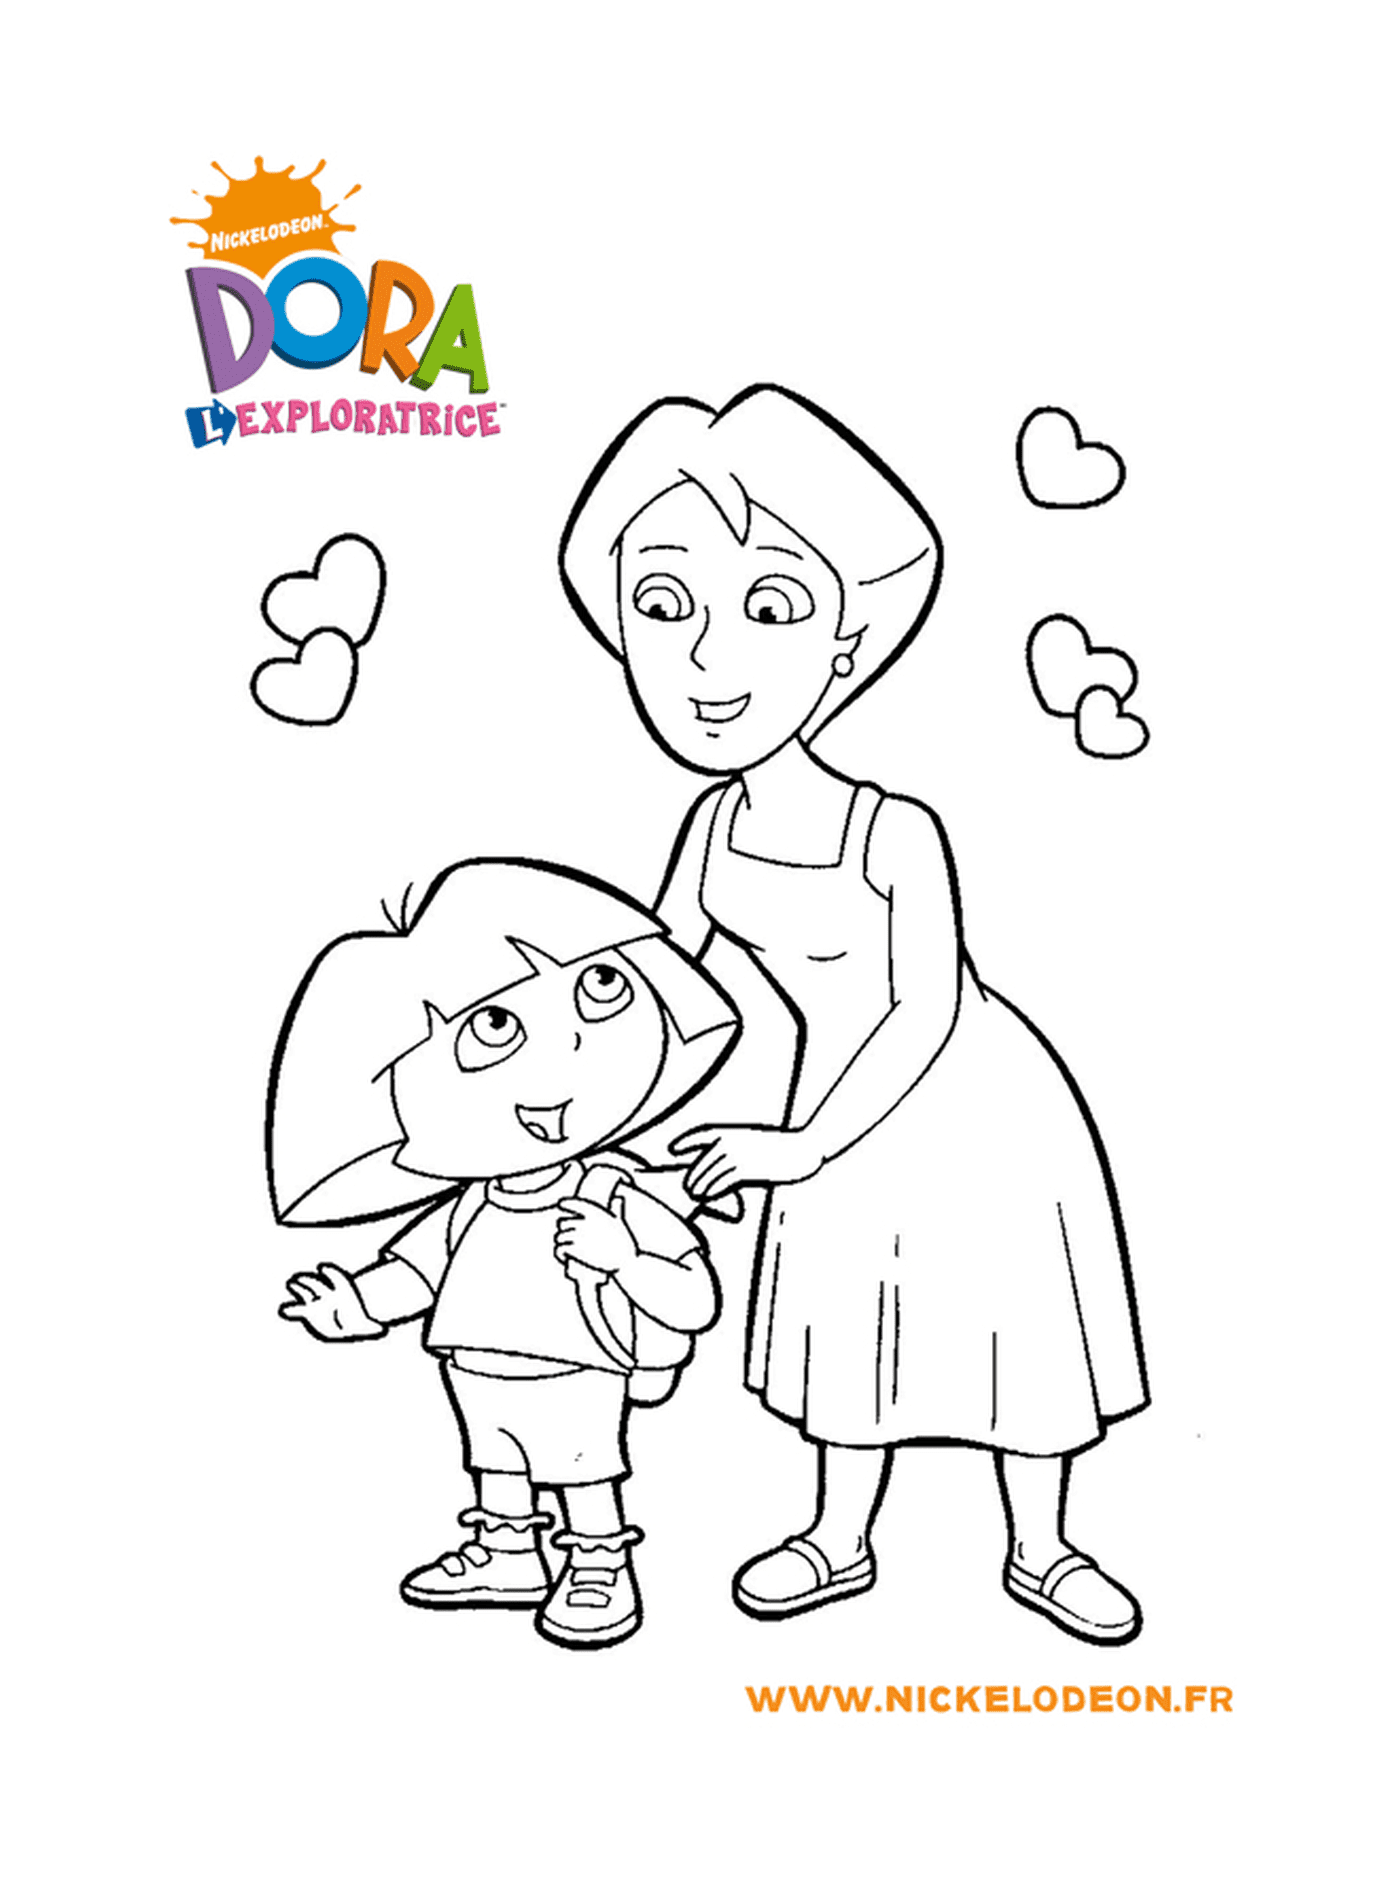  Dora spends precious time with her mom 